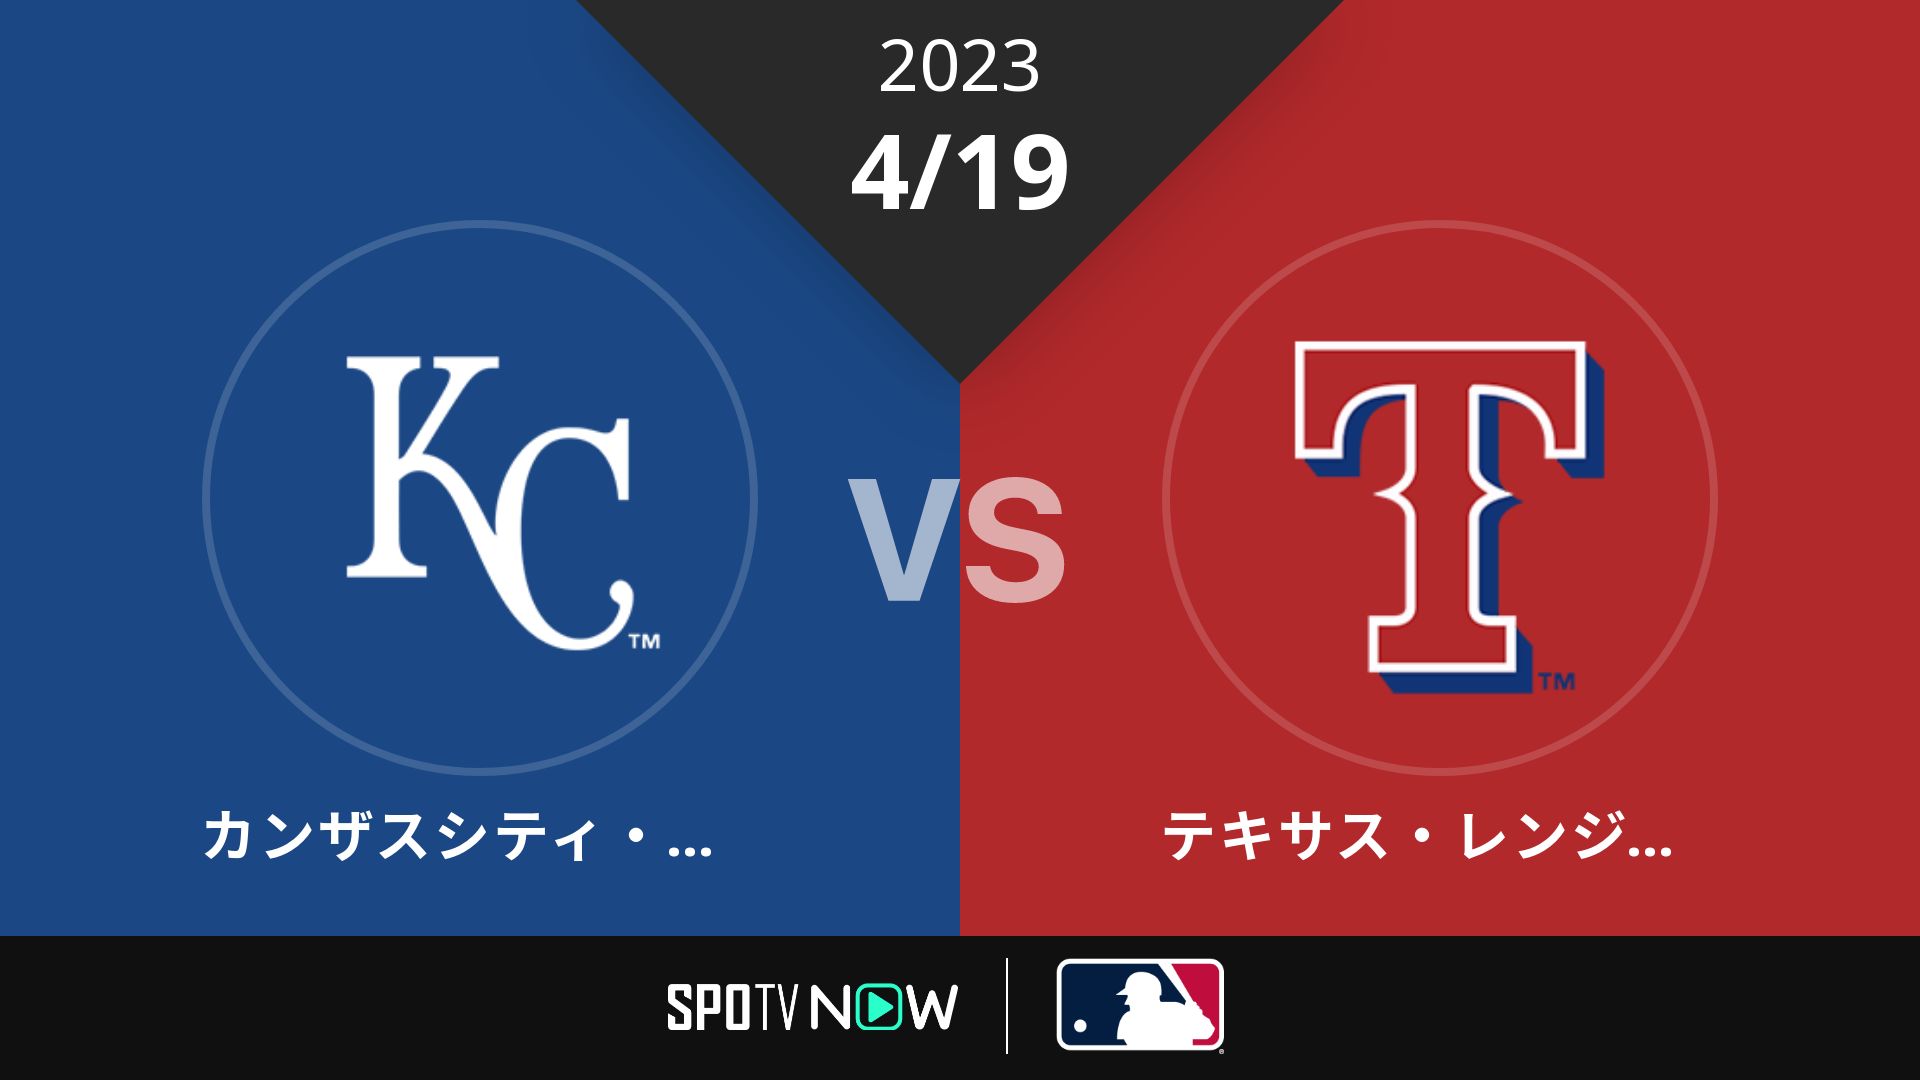 2023/4/19 ロイヤルズ vs レンジャーズ [MLB]